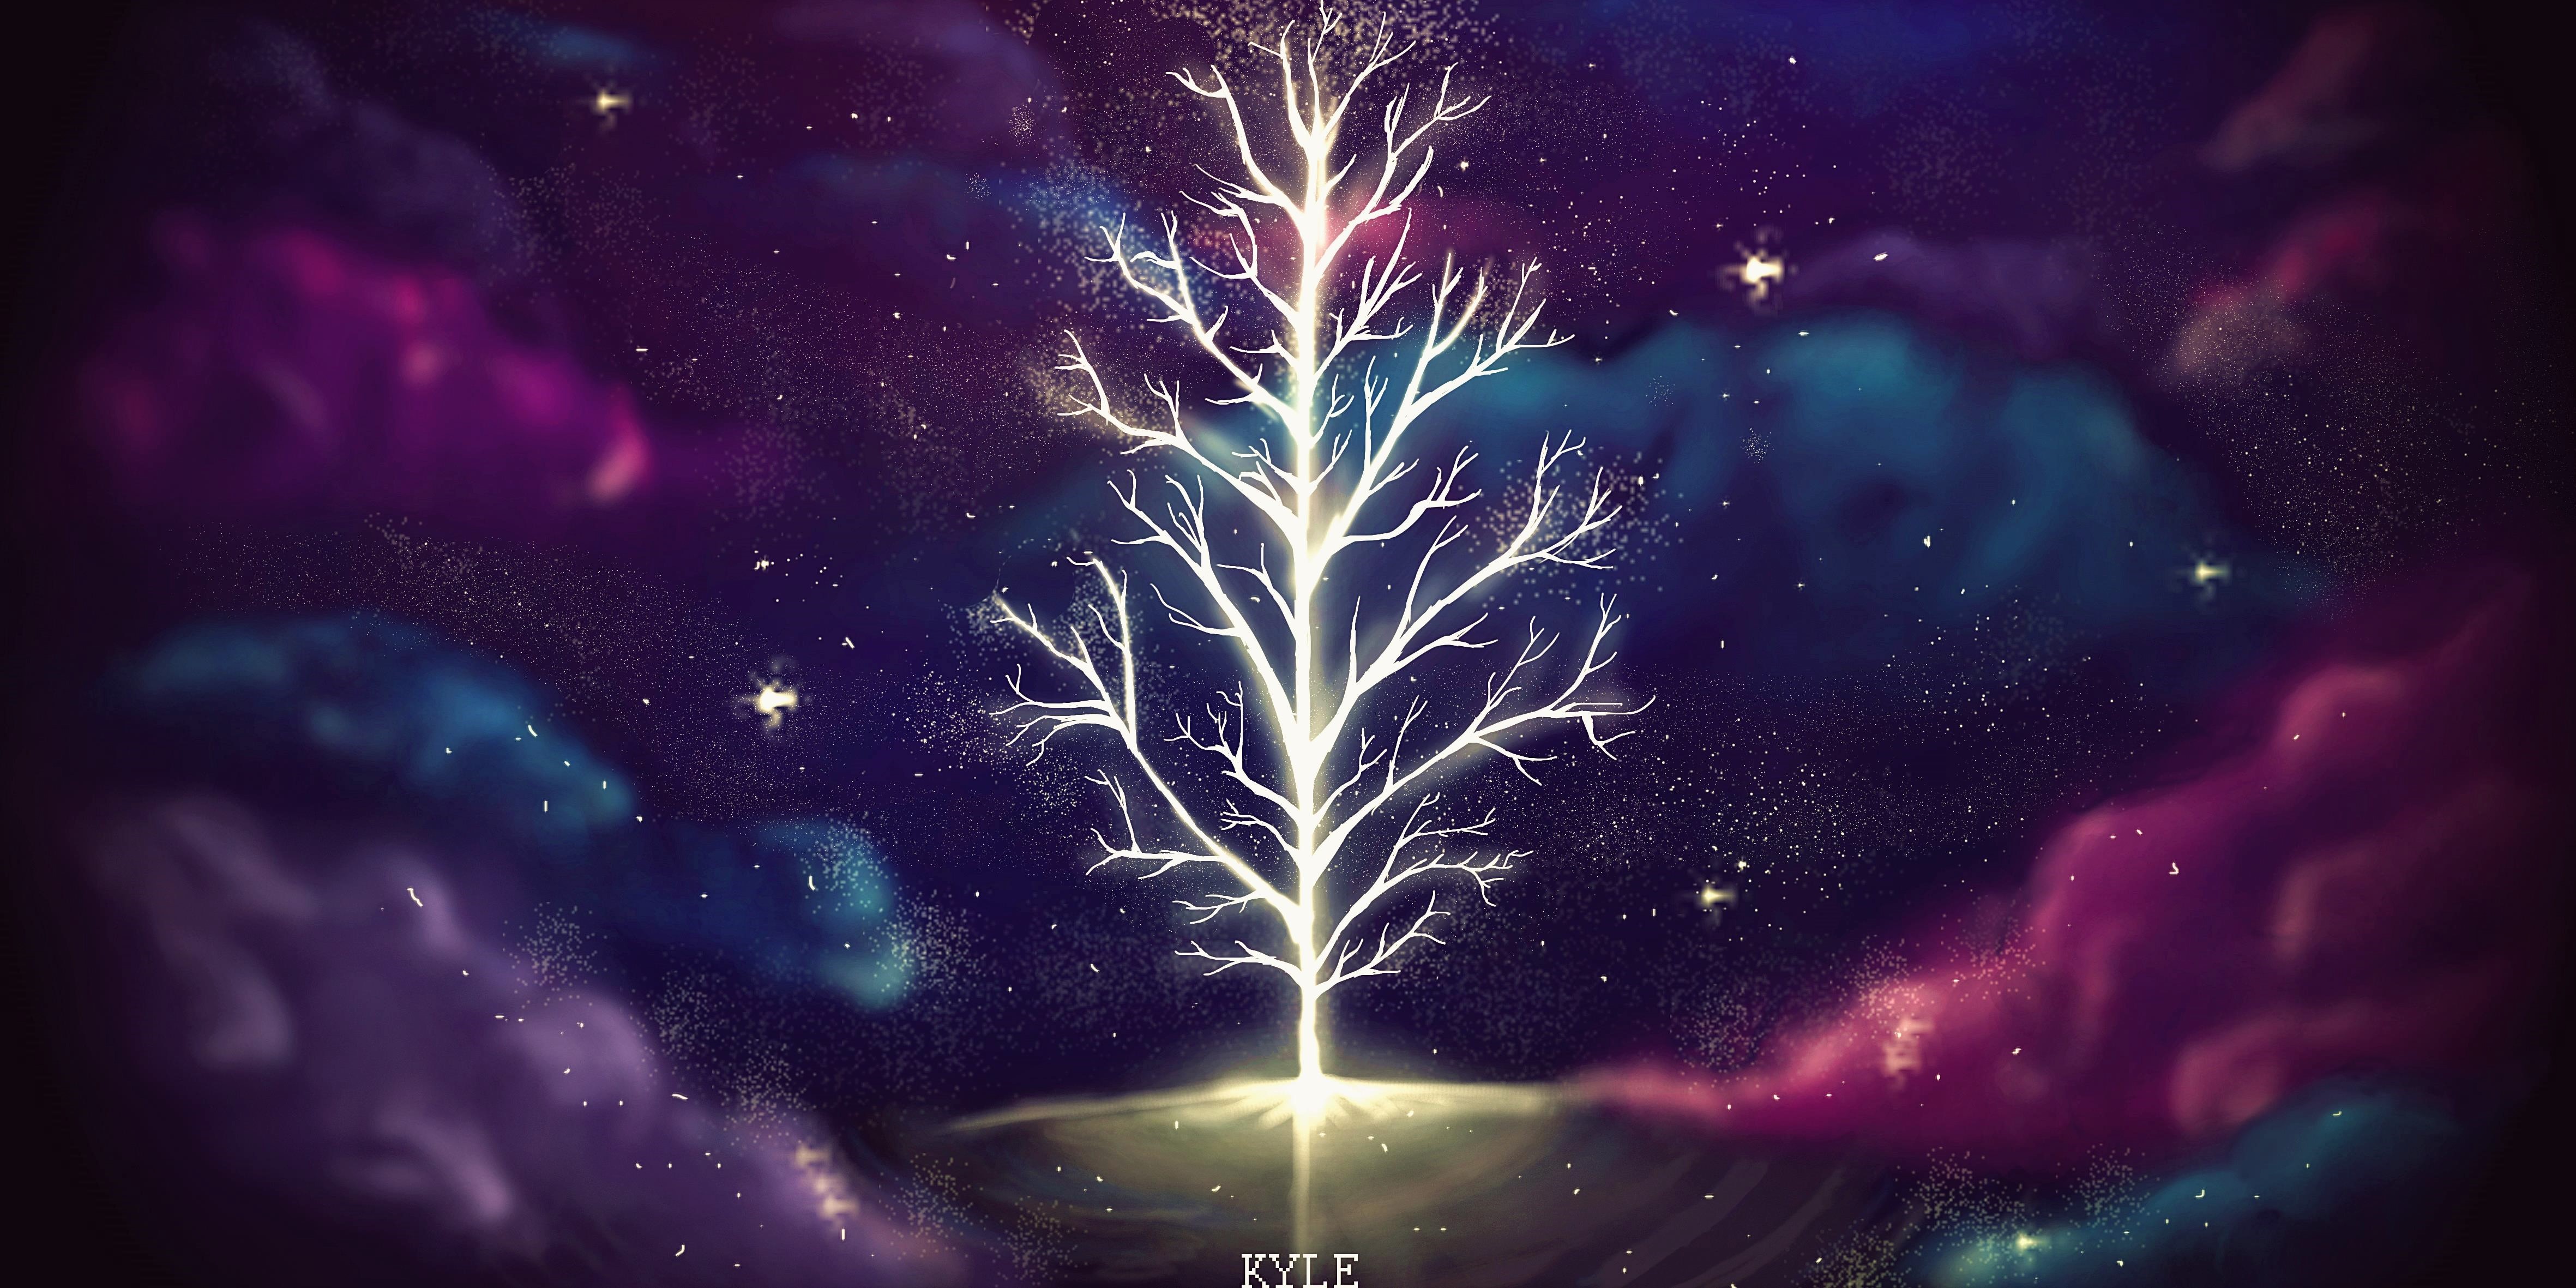 Скачать обои бесплатно Космос, Ночь, Облака, Дерево, Пурпурный, Художественные, Светиться картинка на рабочий стол ПК